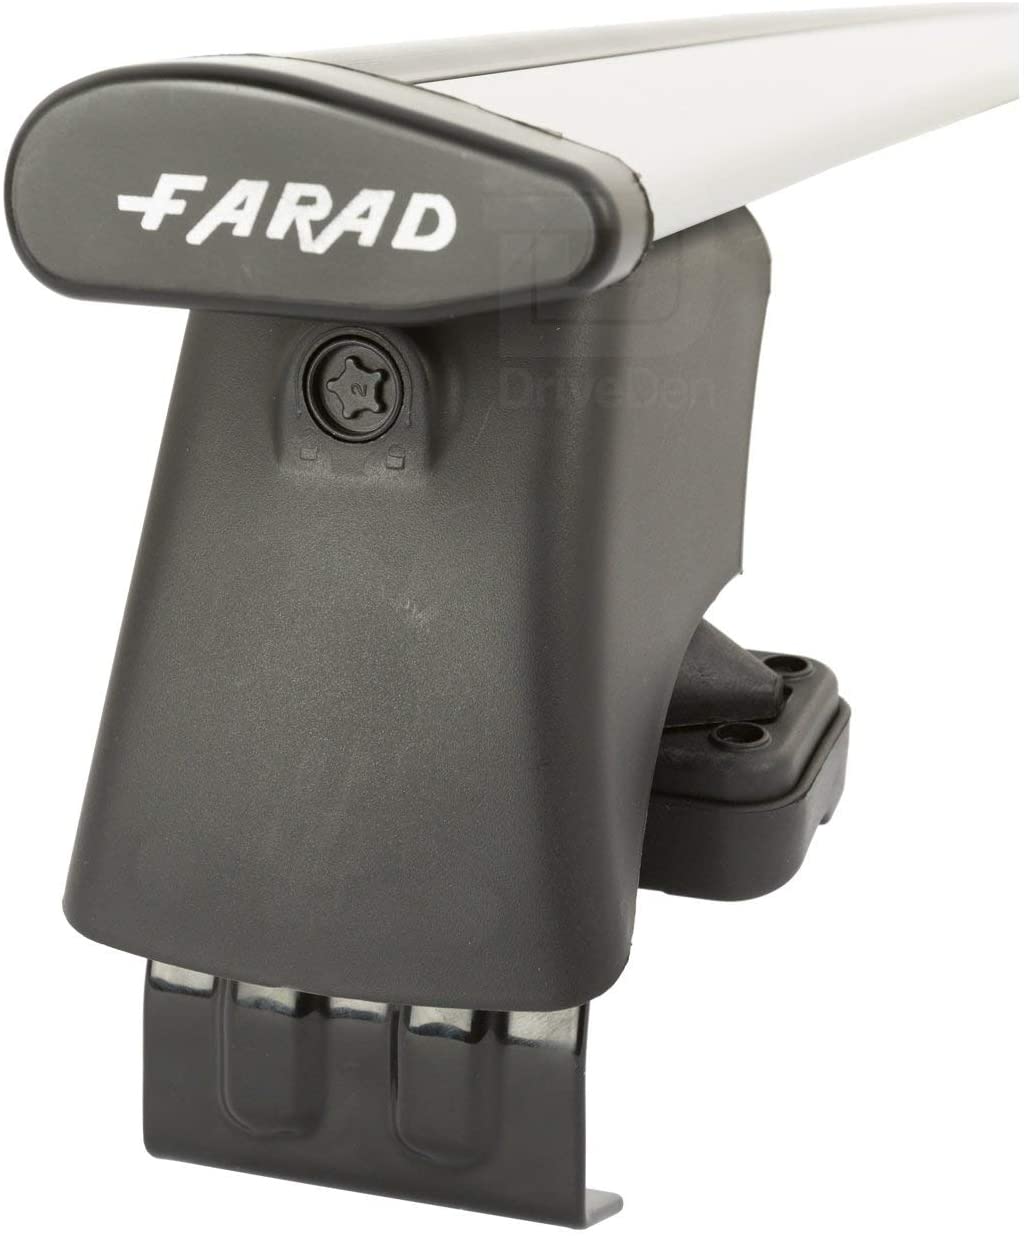 FARAD-Kit H2 per barre portatutto - Smart Smart 1998-2007 (senza corrimano)